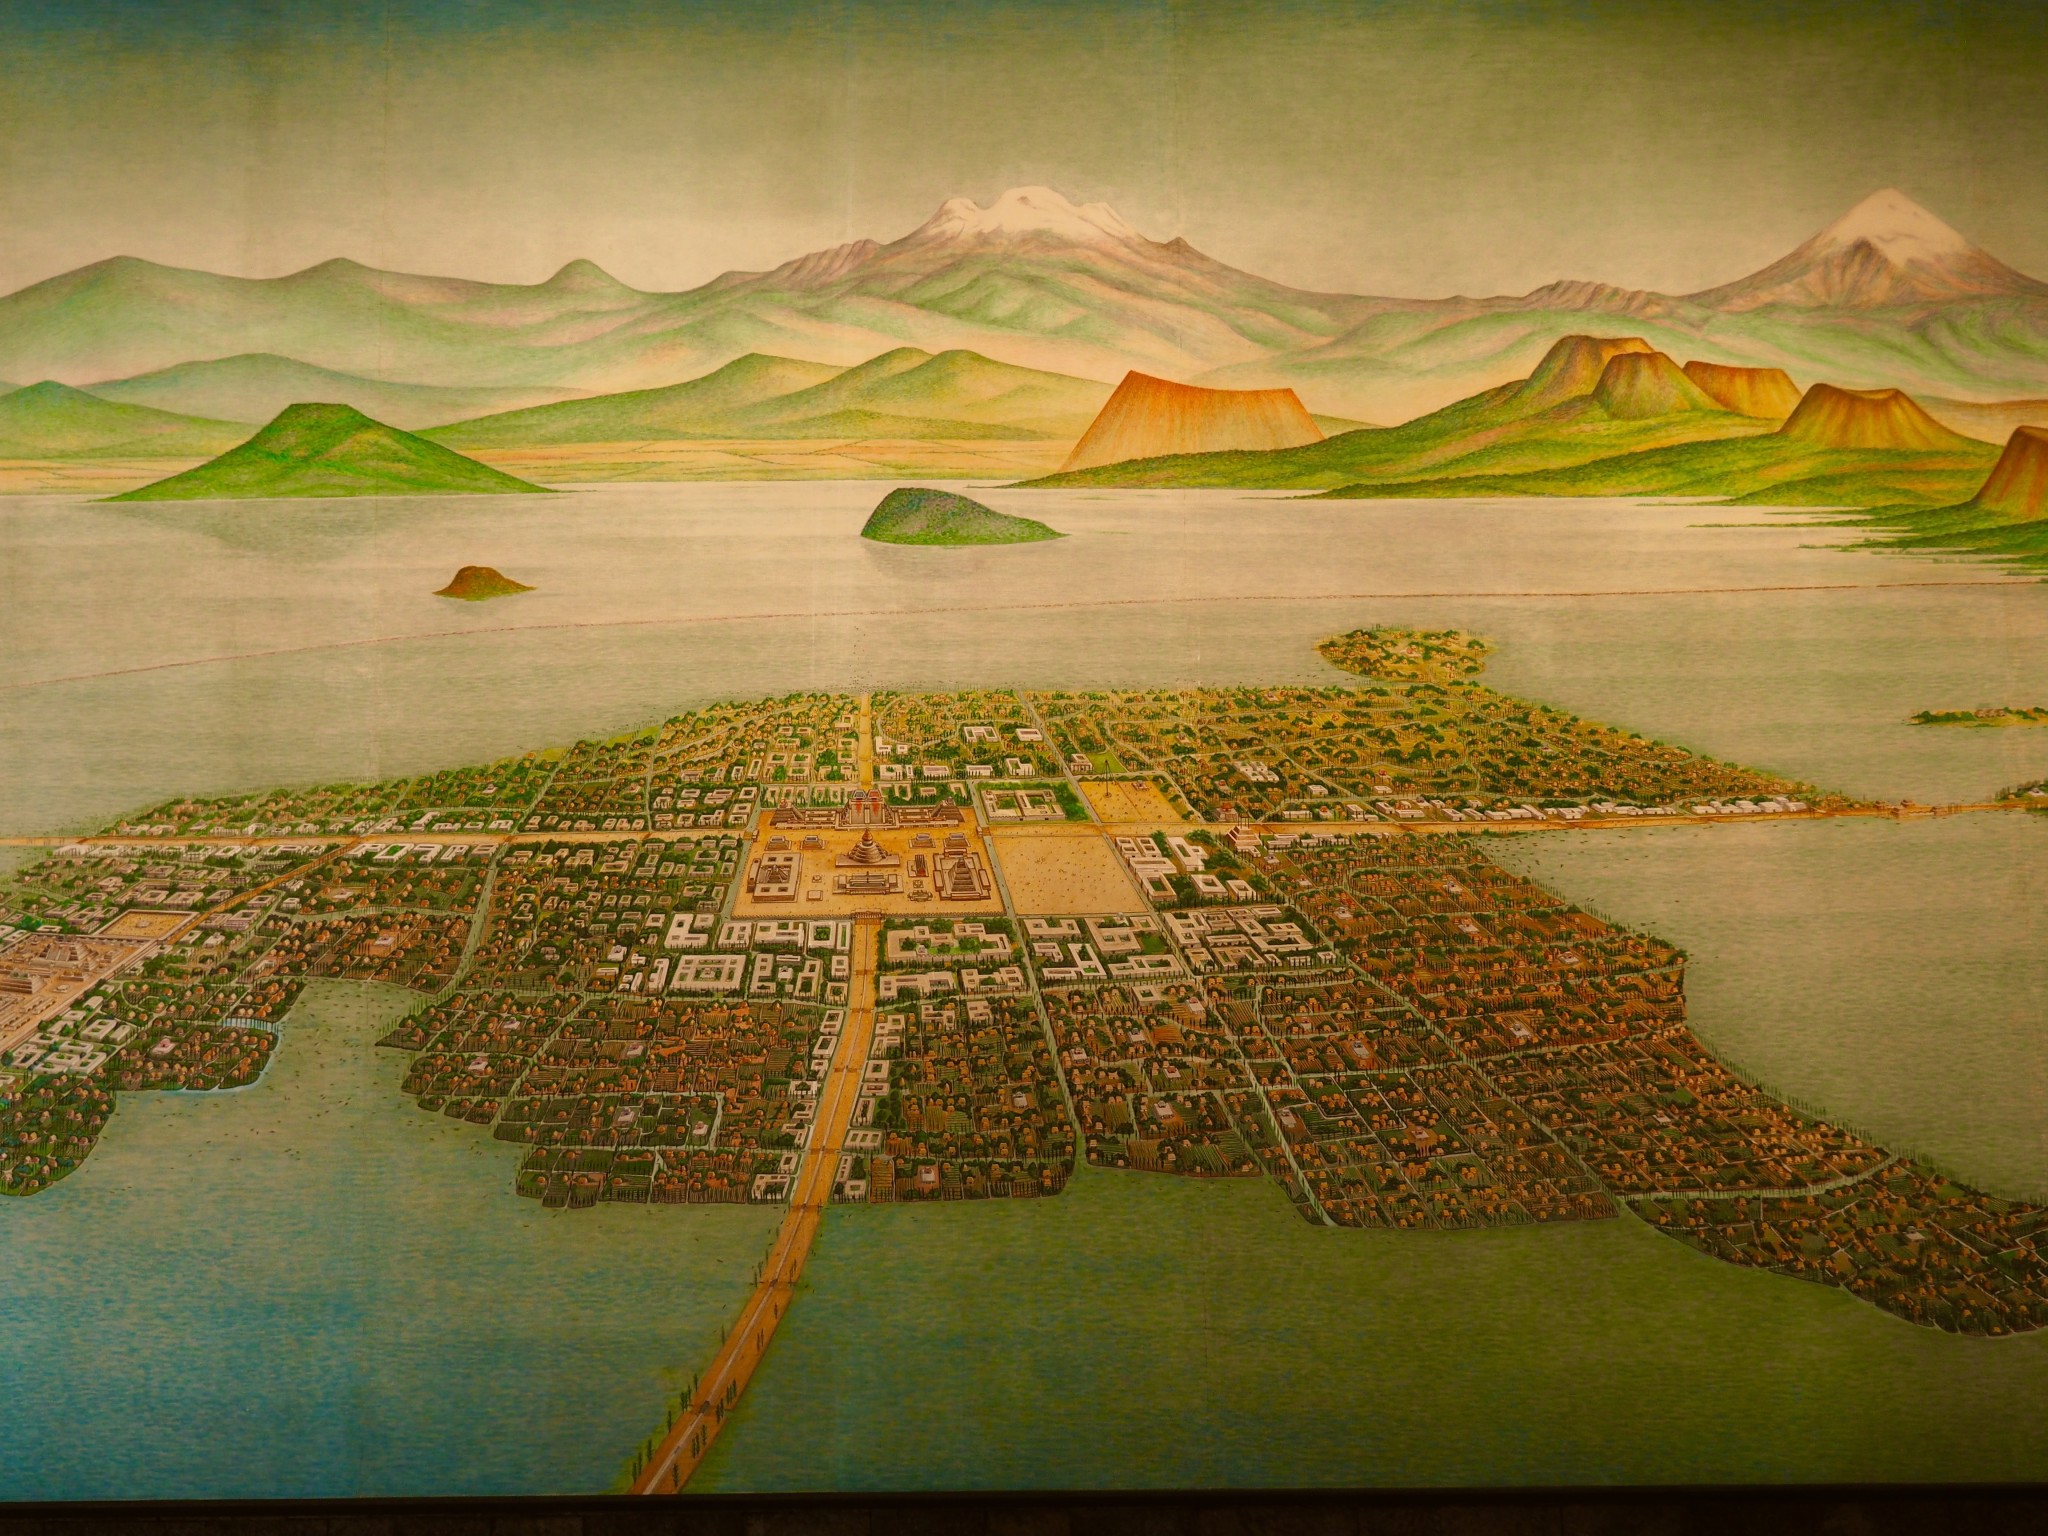 Mexico City bzw. Tenochtitlan vor 500 Jahren